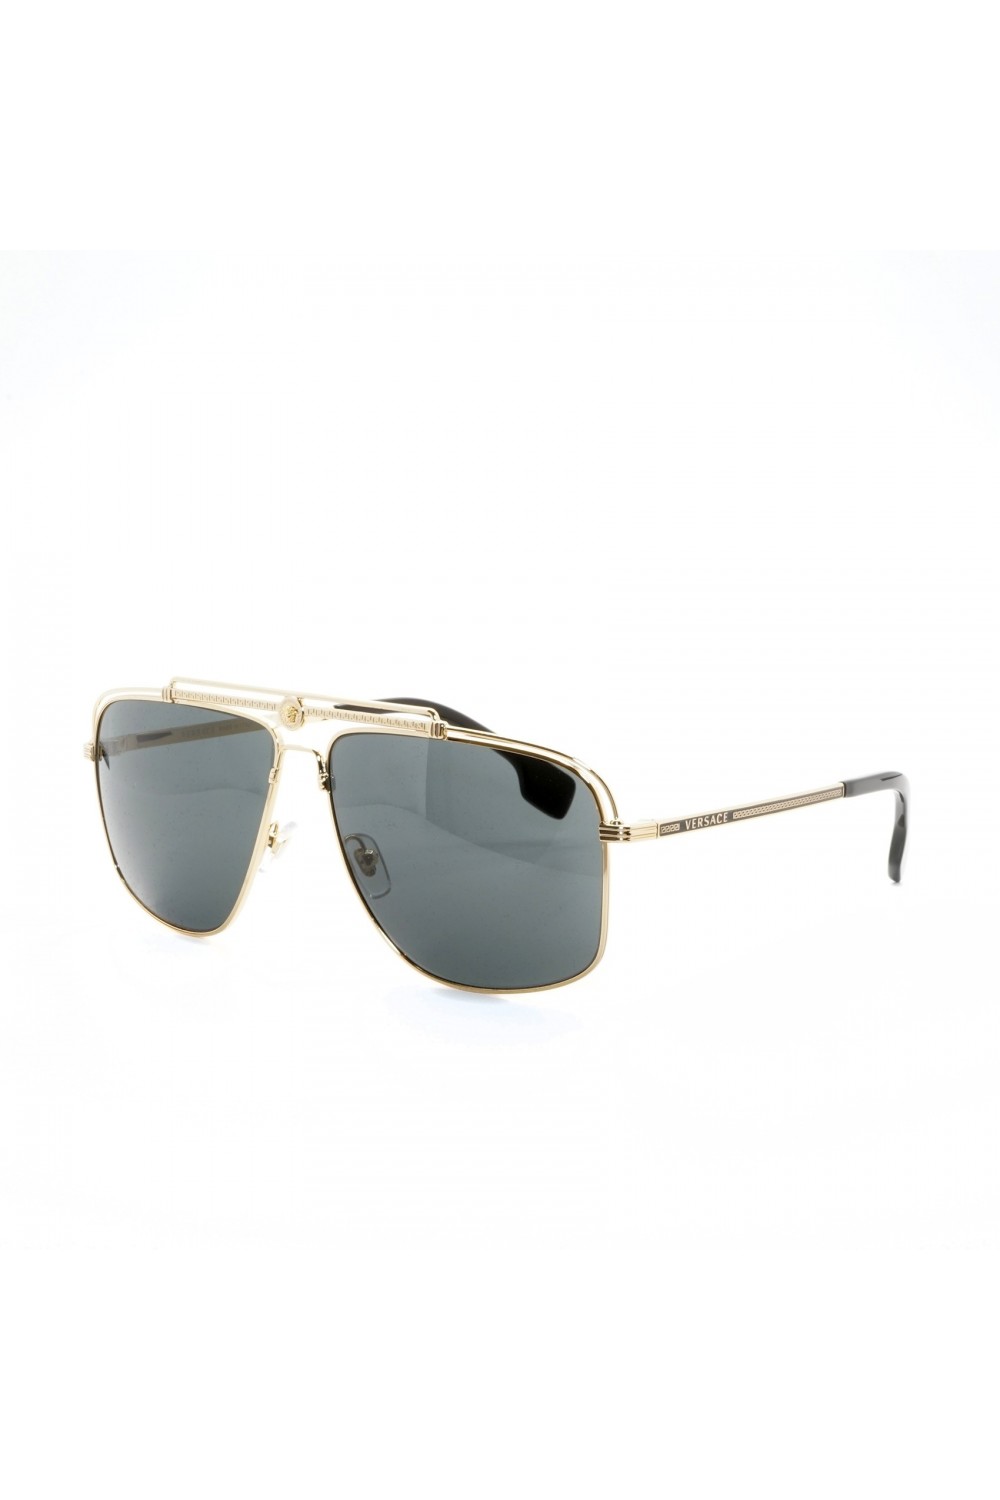 Versace - Occhiali da sole in metallo squadrati per uomo oro - 2242 1002/87